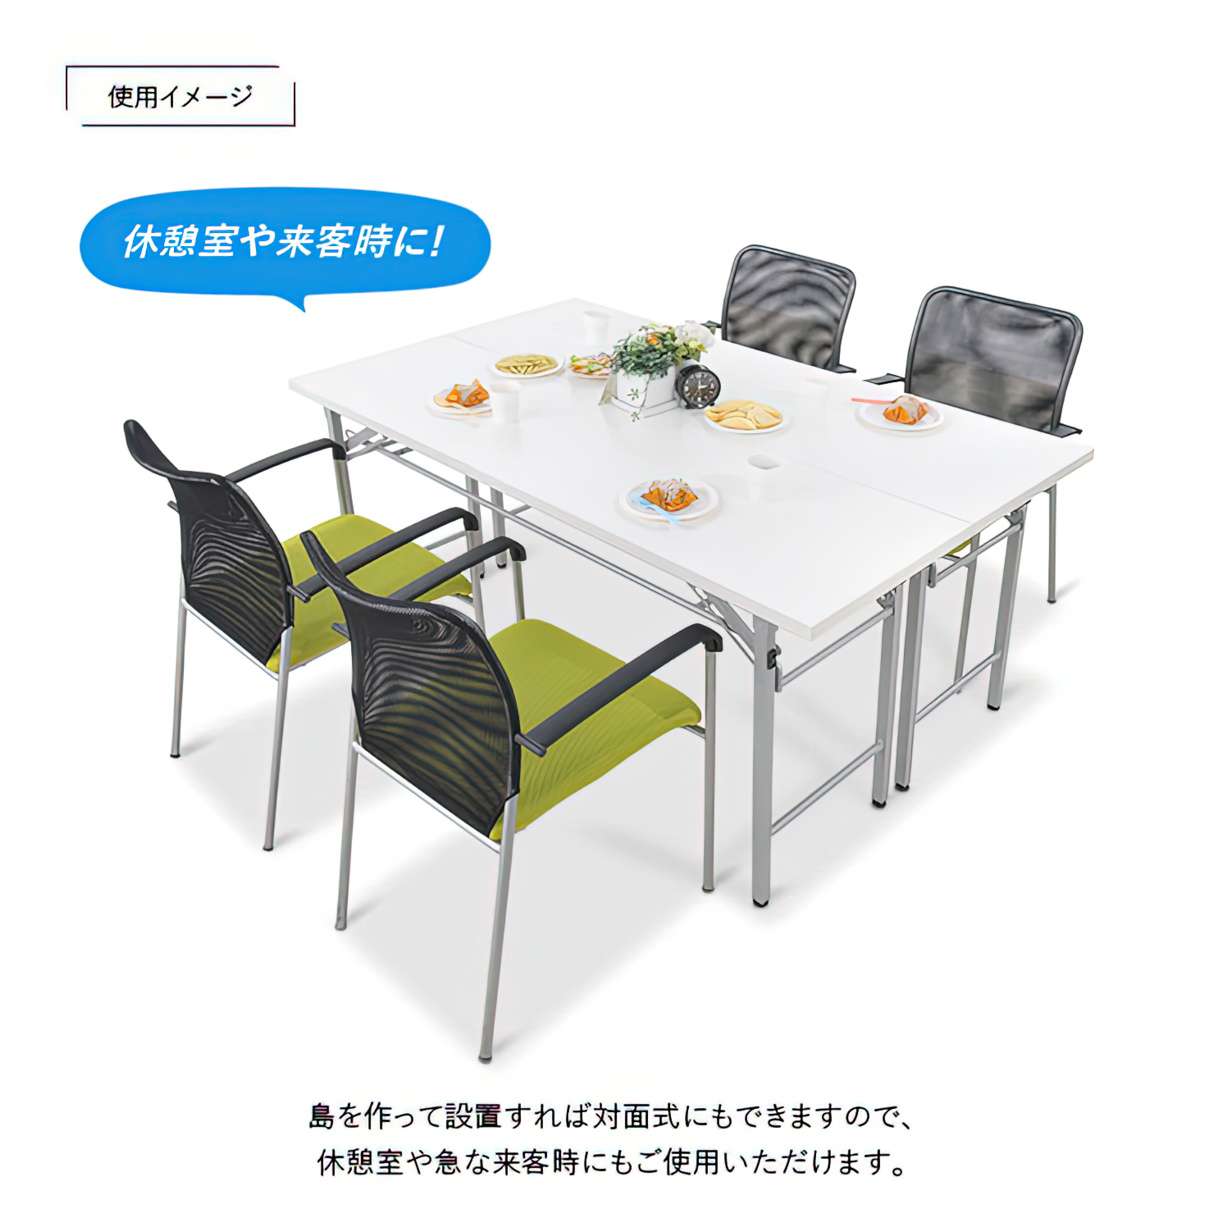 生興 テーブル KSP型スタックテーブル W1500×D450×H700 天板ハネ上げ式